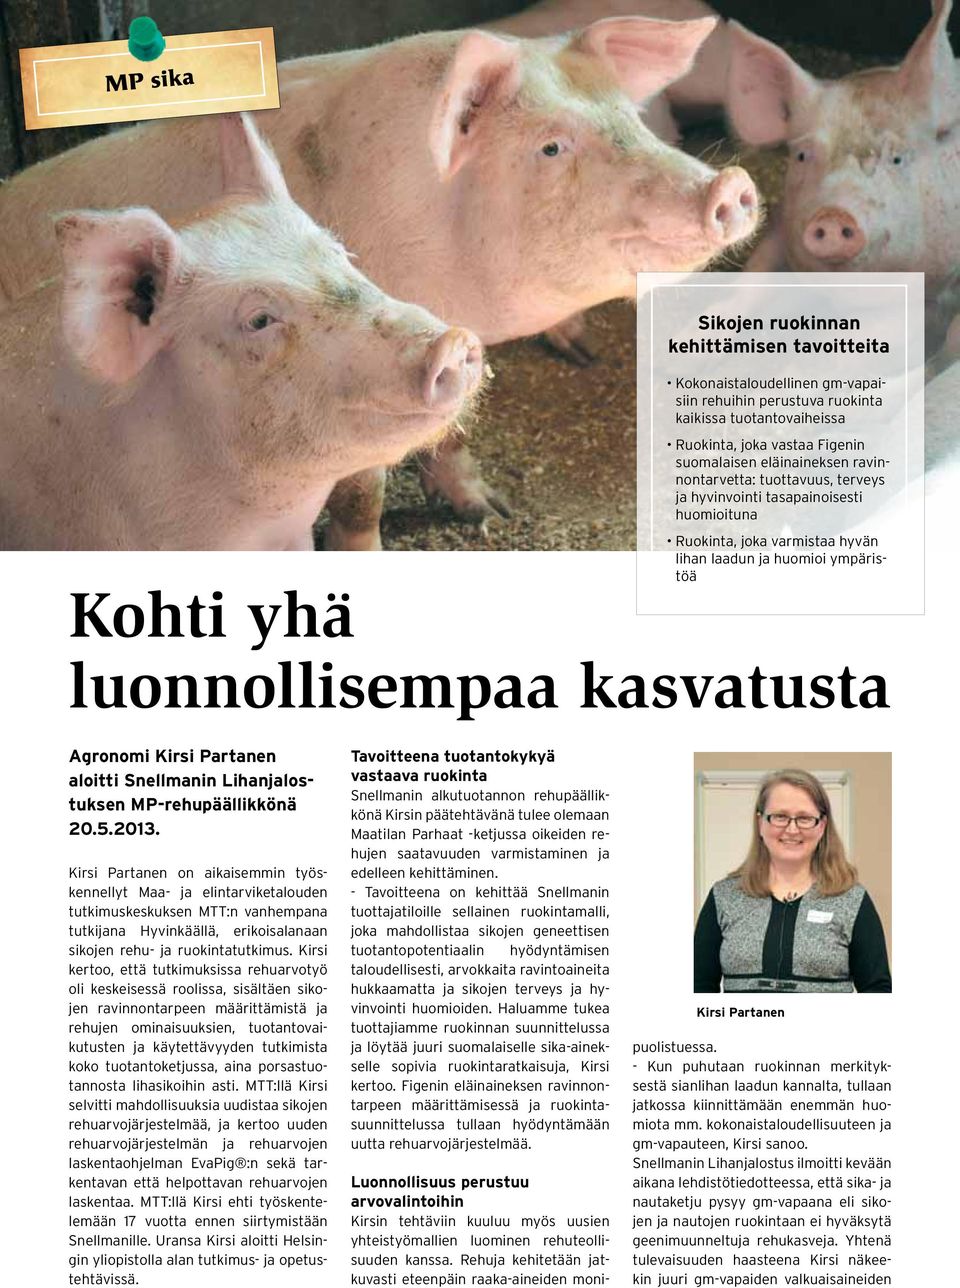 Agronomi Kirsi Partanen aloitti Snellmanin Lihanjalostuksen MP-rehupäällikkönä 20.5.2013.